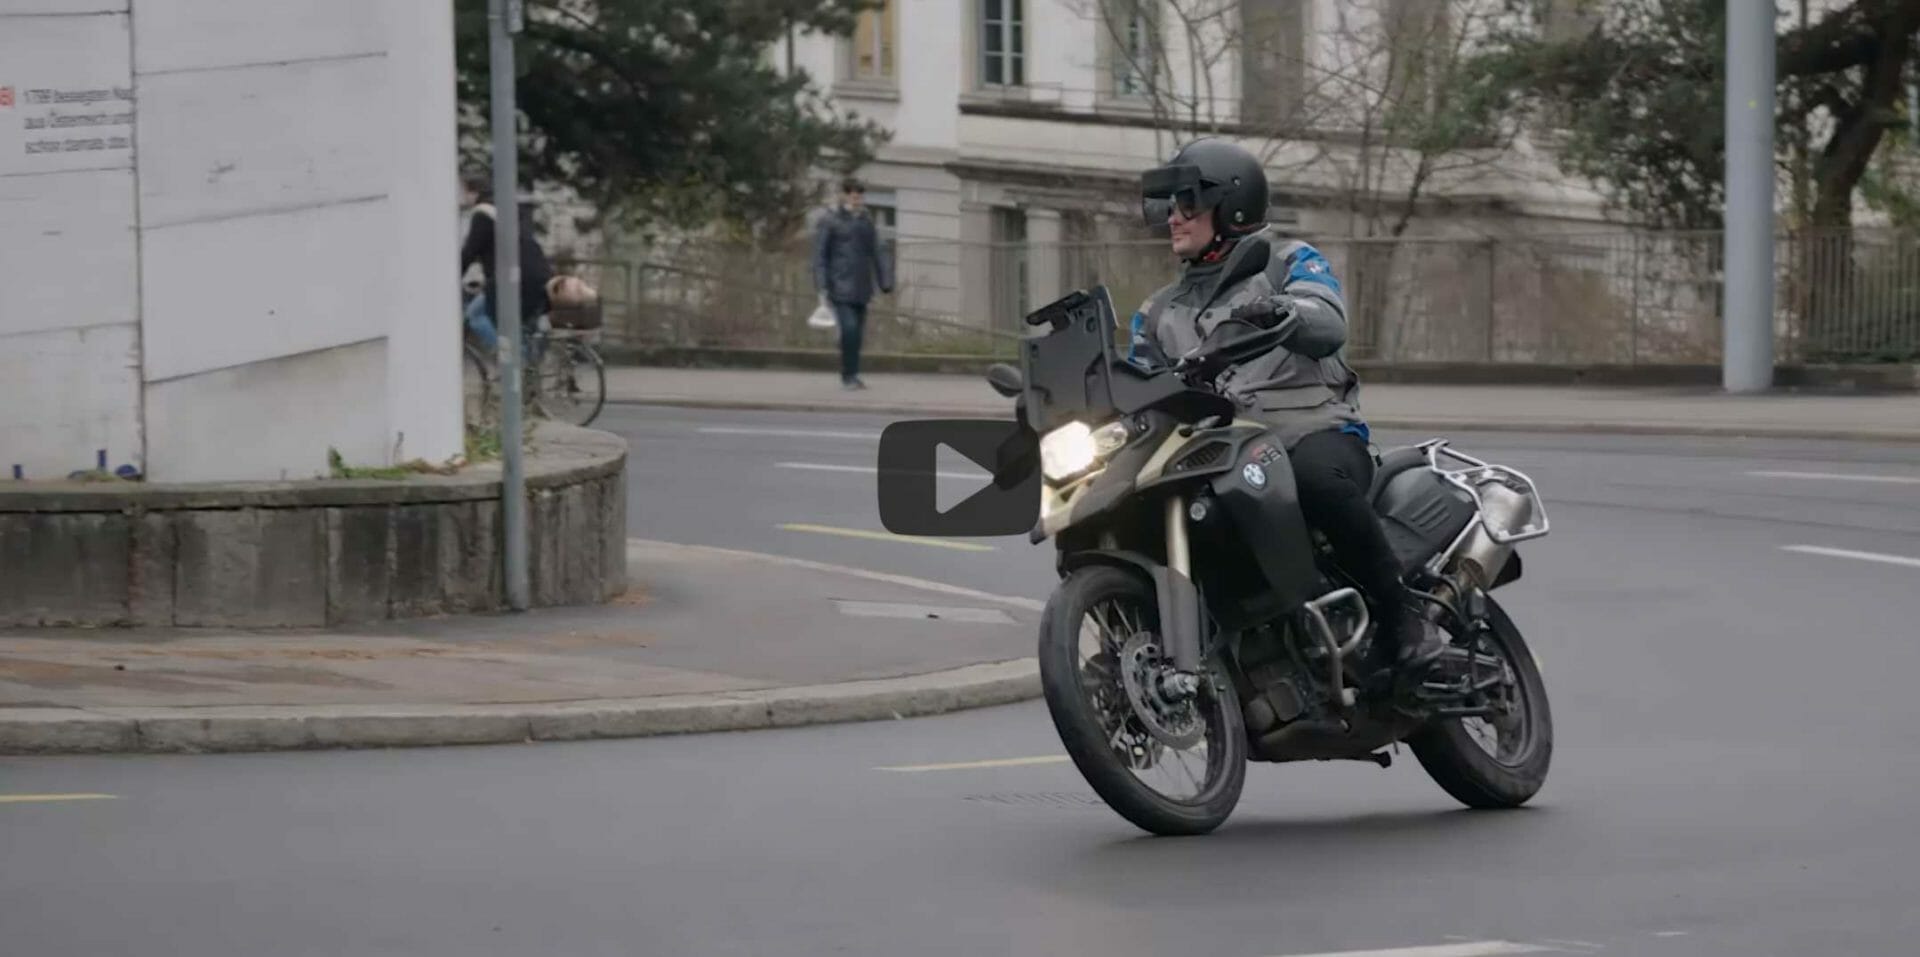 ETH will mit Augmented Reality Motorradfahren sicherer machen
- auch in der MOTORRAD NACHRICHTEN APP